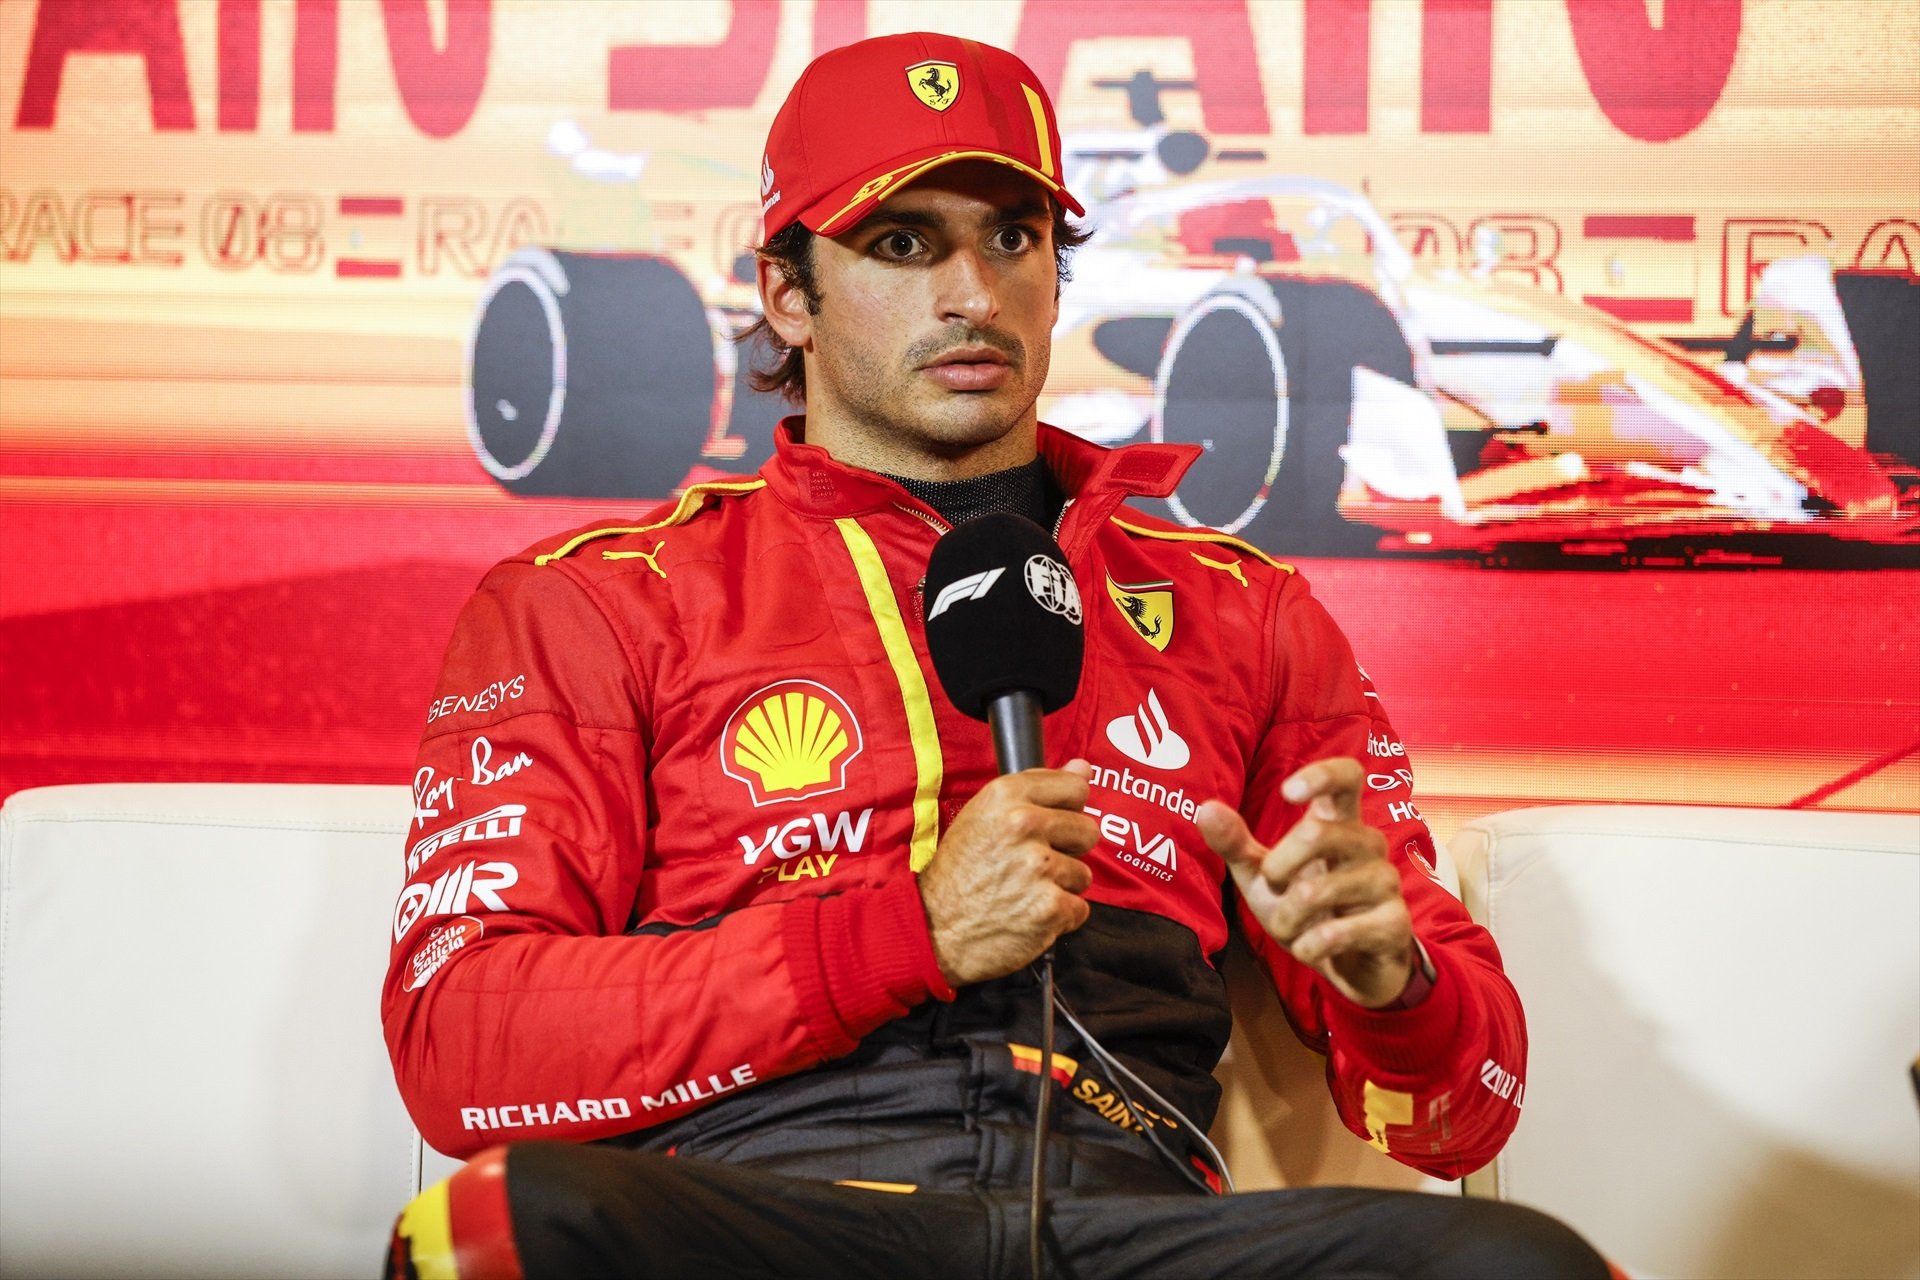 Carlos Sainz, humiliat per Ferrari, els diners són per a Lewis Hamilton, atenció